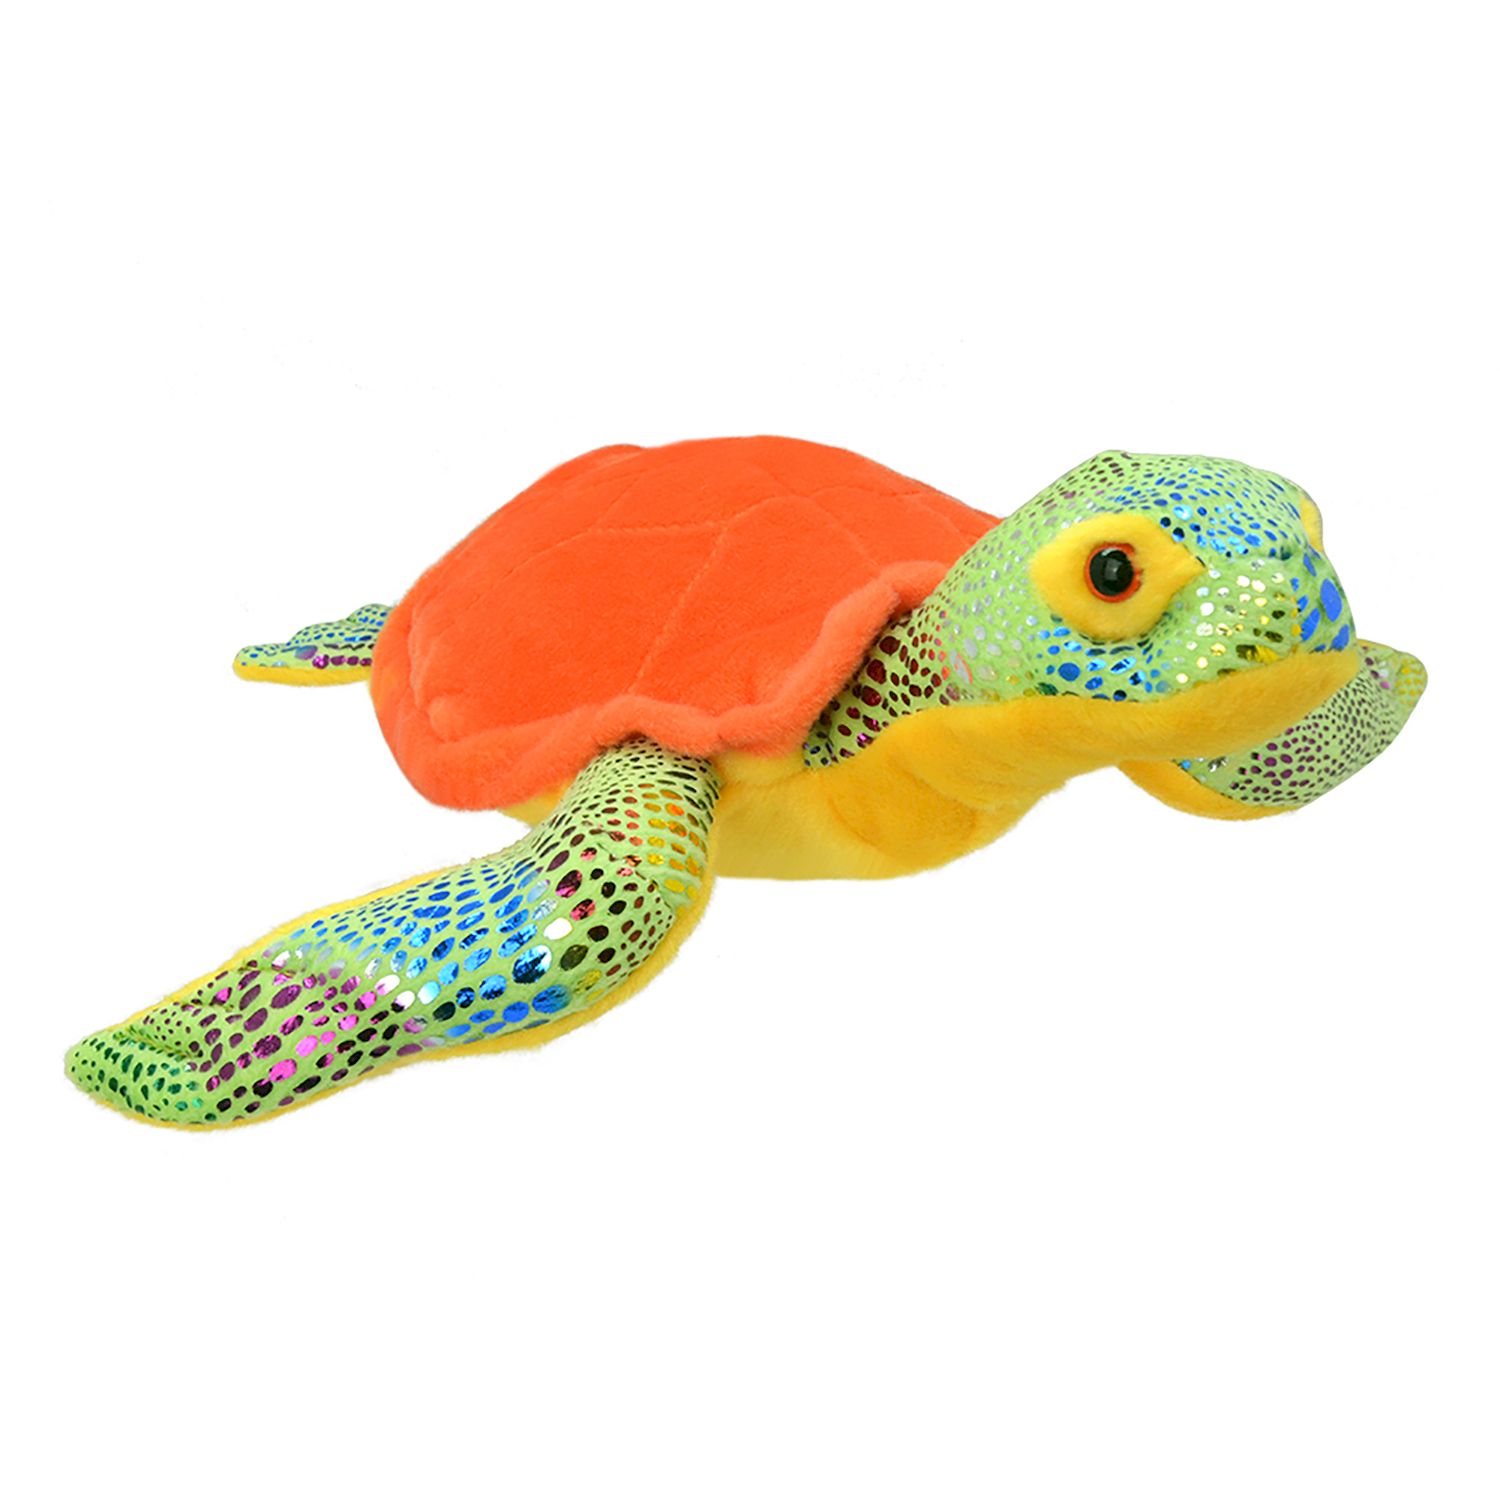 Мягкая игрушка All About Nature Морская черепаха, 20 см мягкая игрушка абвгдейка черепаха изумрудная 10362429 25 см